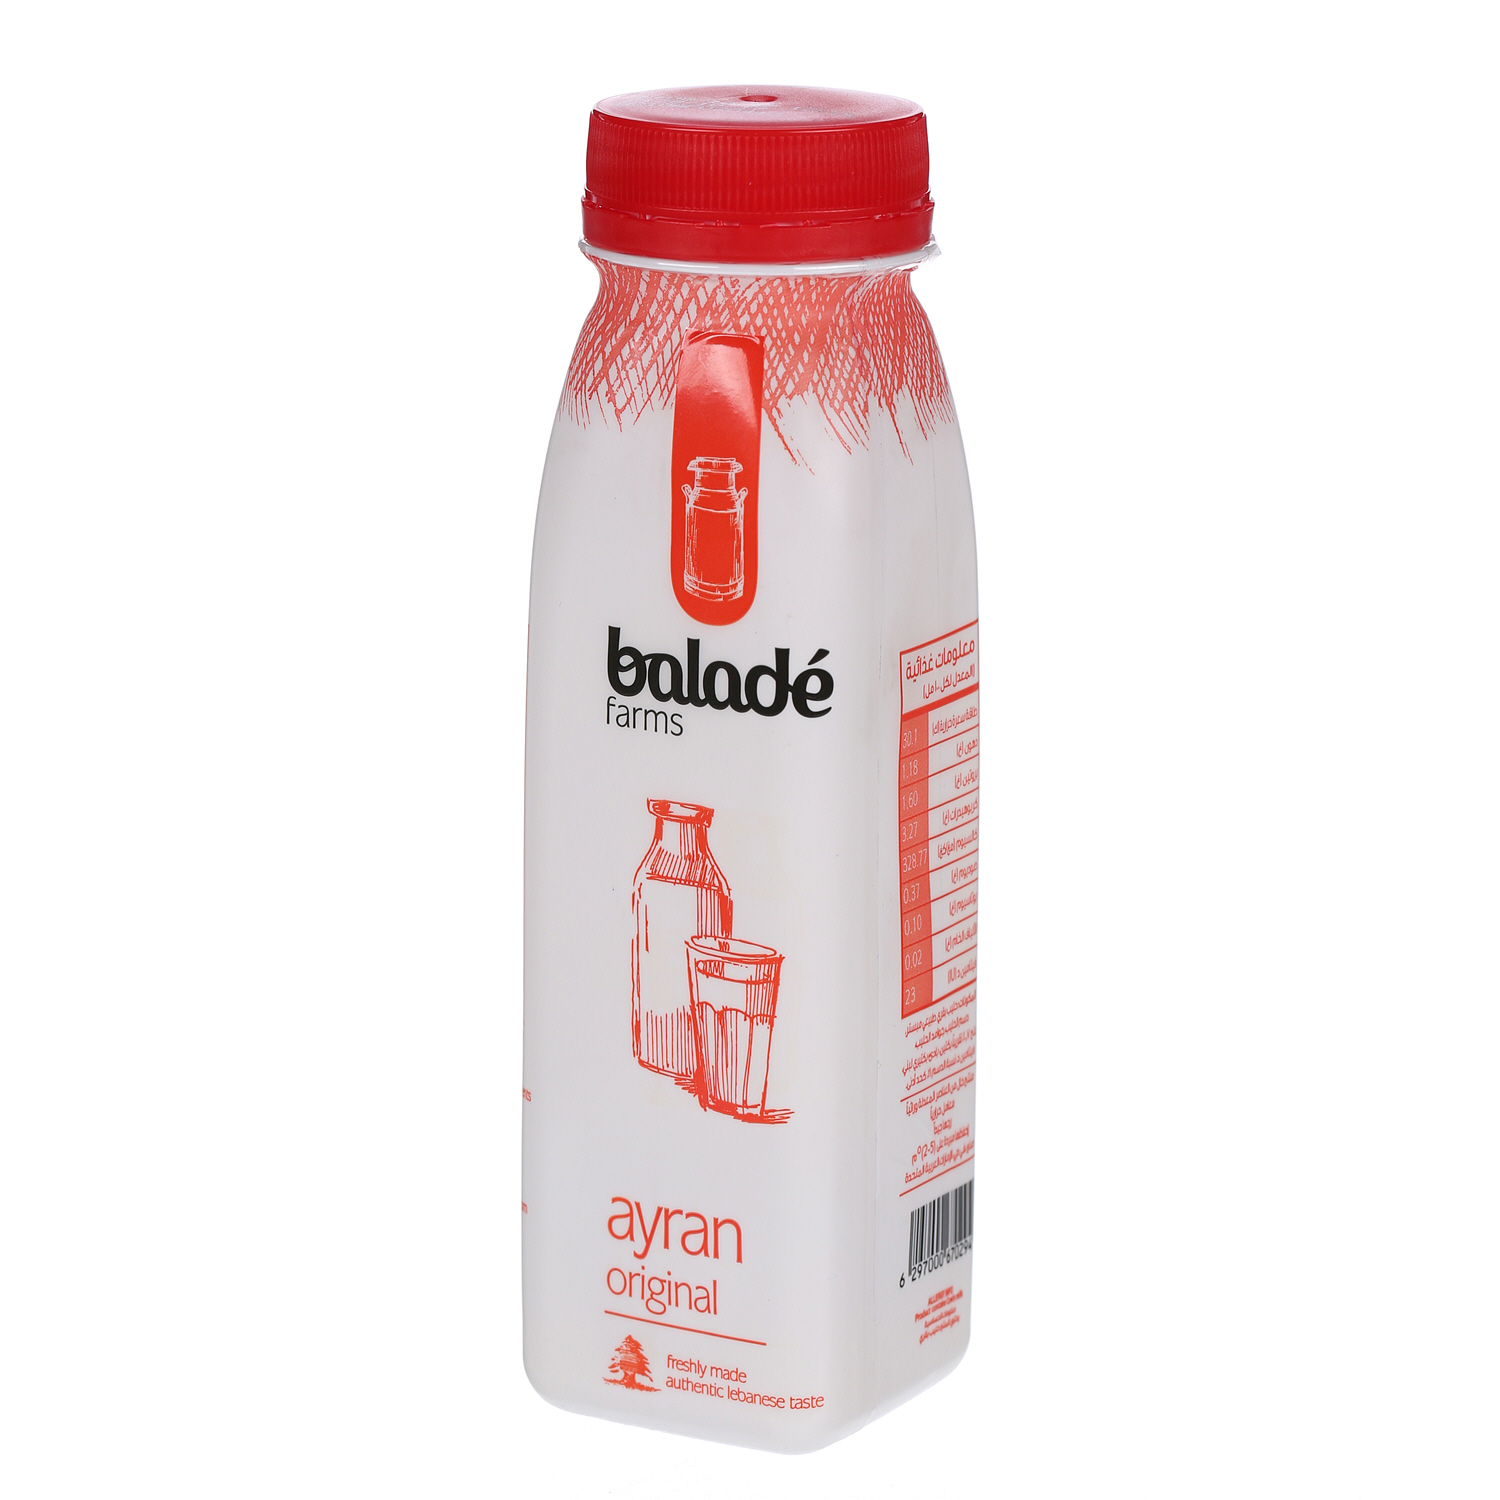 Balade Ayran Original 225 ml